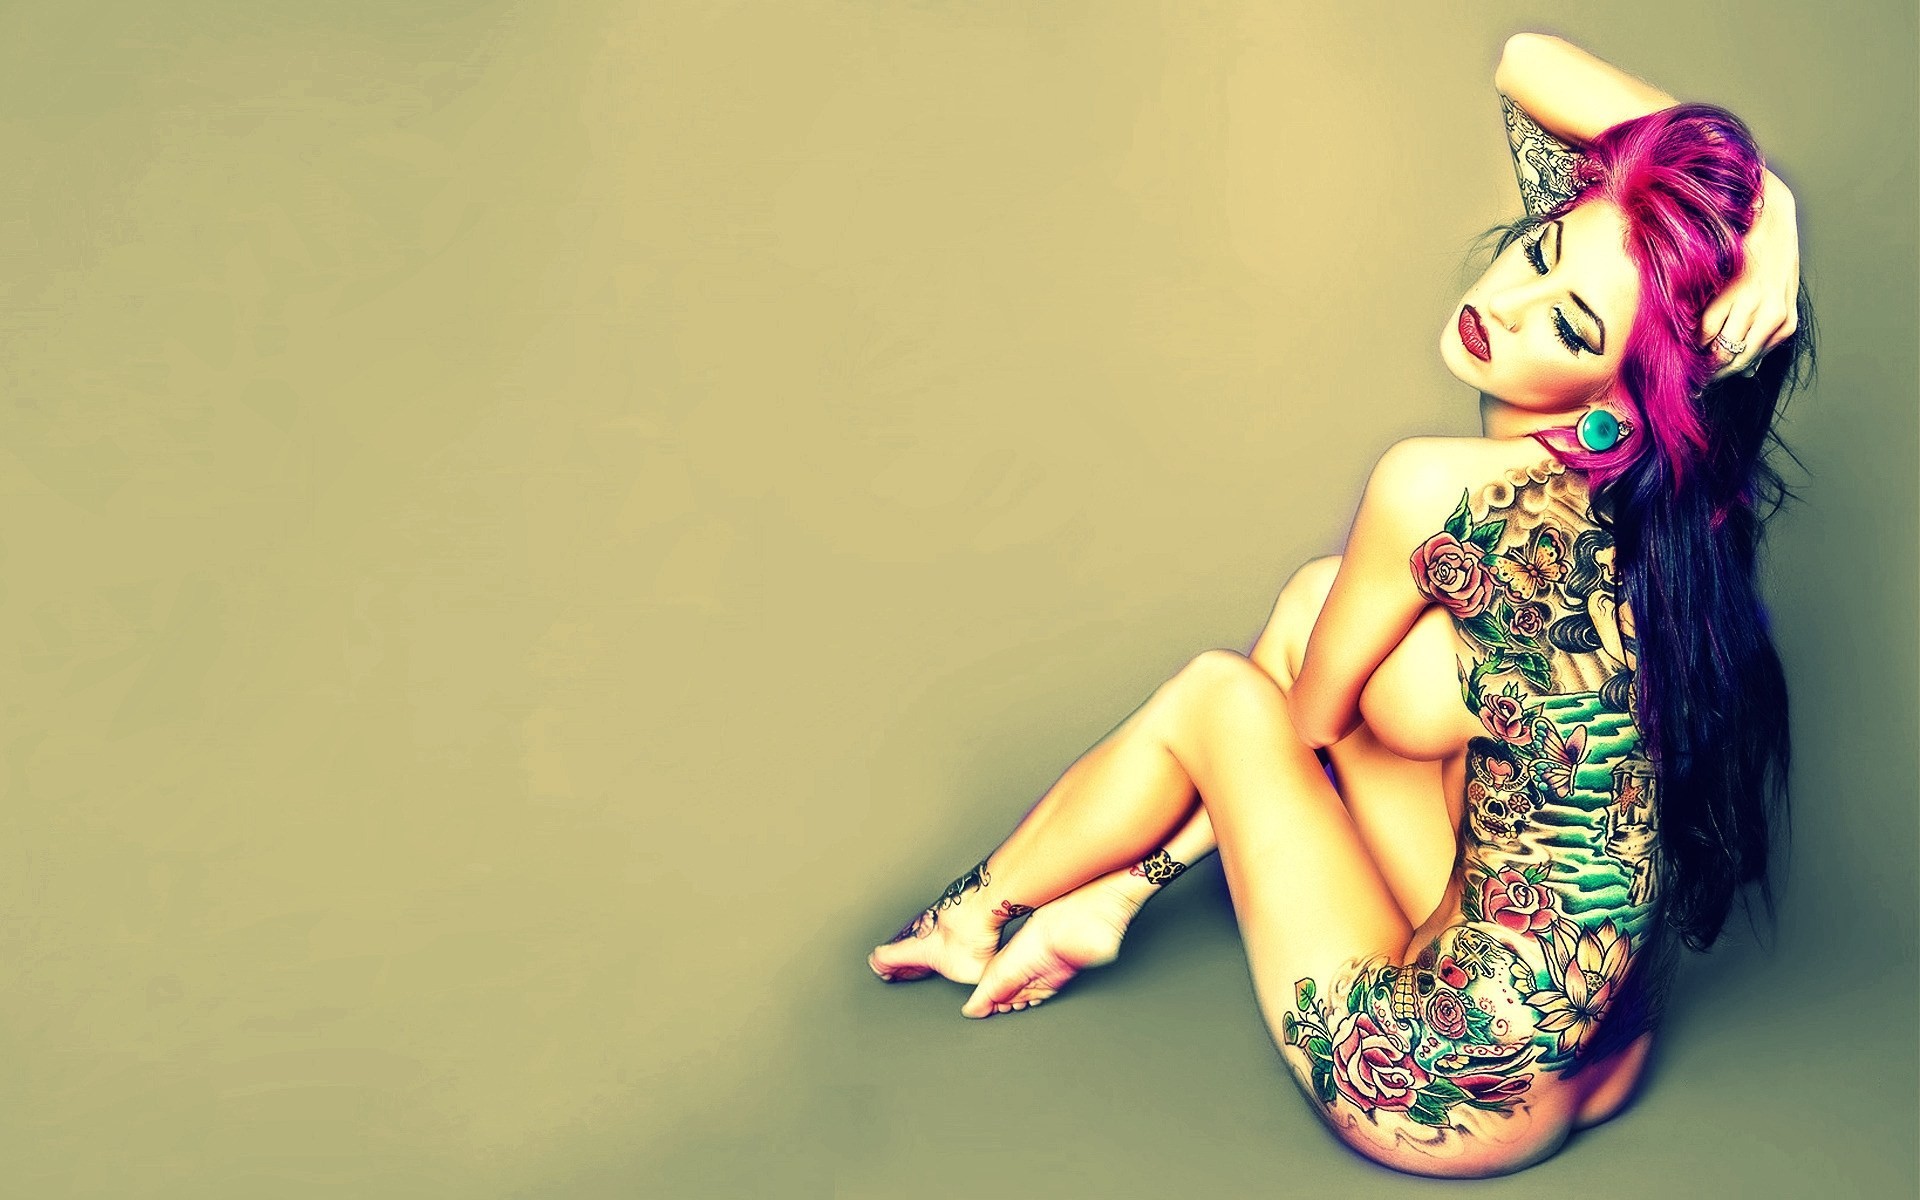 Обнаженная девушка с красивой татуировкой Обои на рабочий стол.